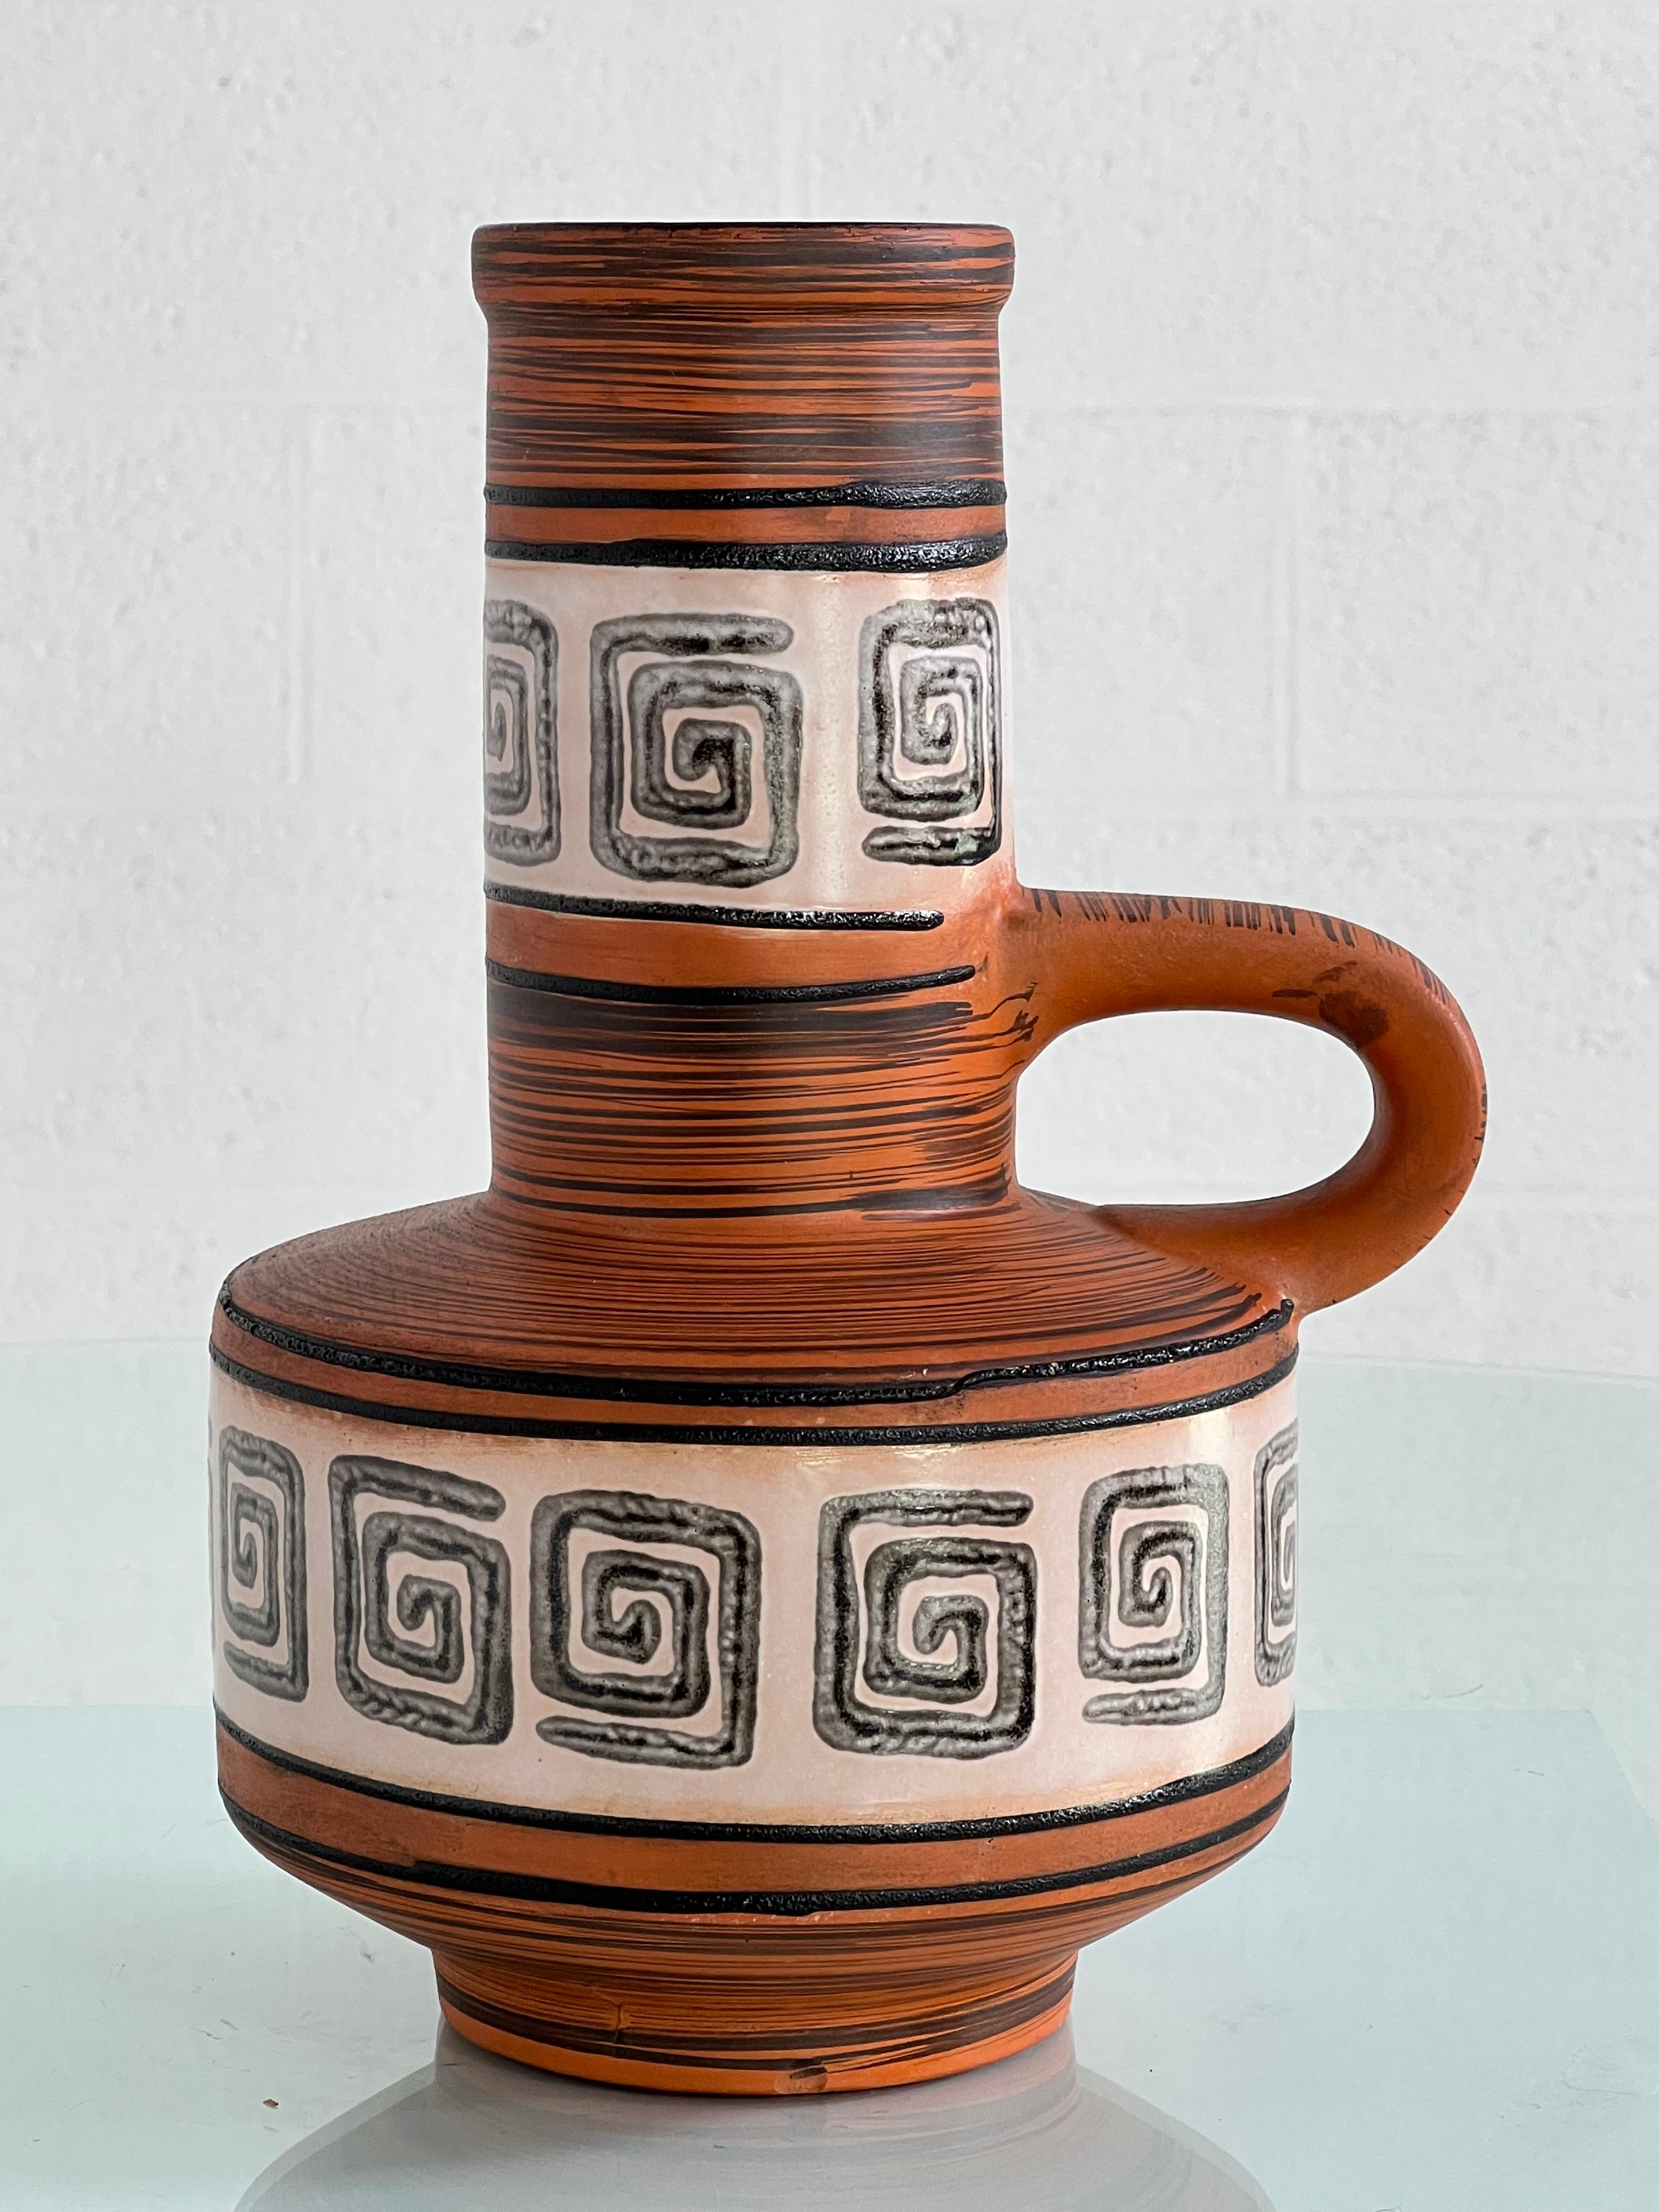 Vase en céramique fait à la main en Allemagne de l'Ouest dans les années 1960, avec une couleur orange noire à l'extérieur et une glaçure noire profonde à l'intérieur.